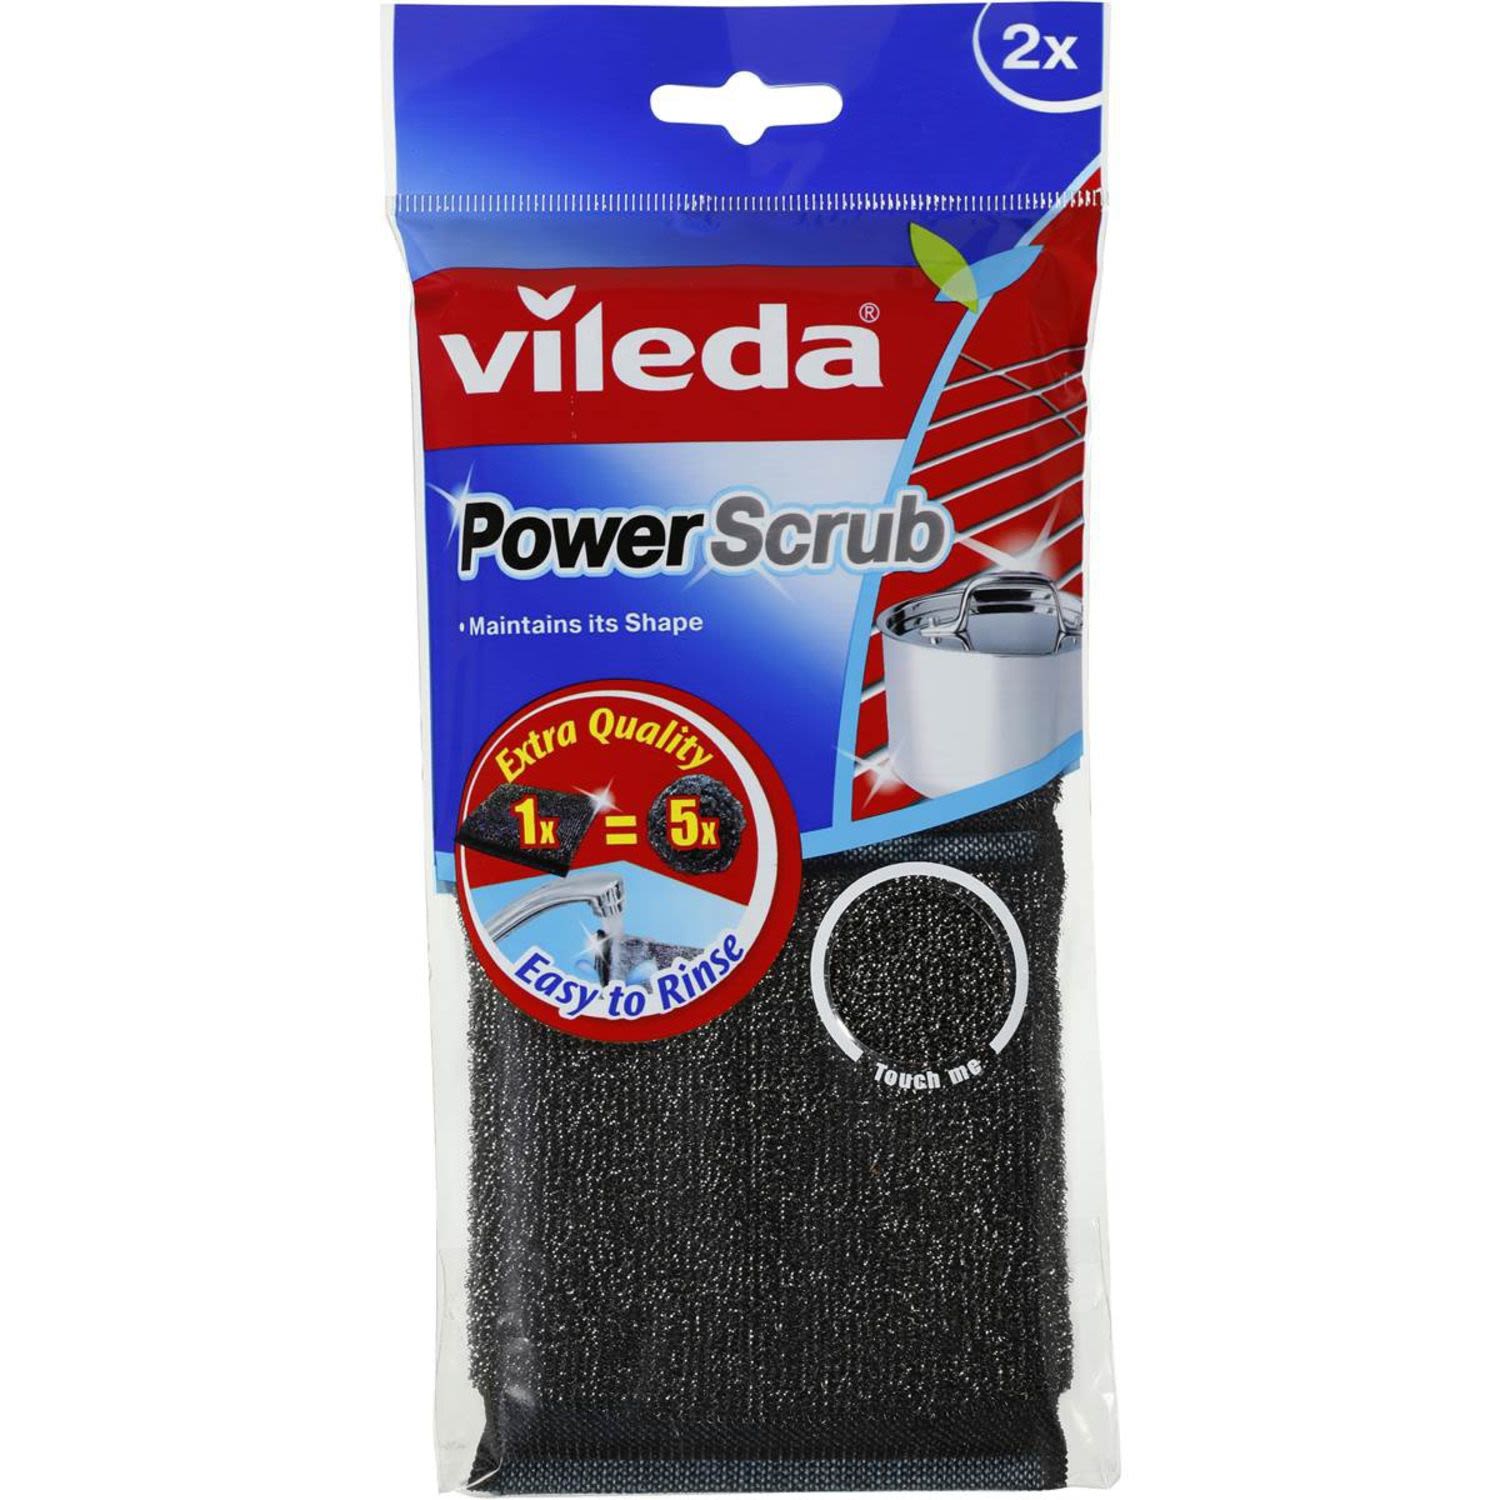 Vileda Scourer Power Scrub, 1 Each